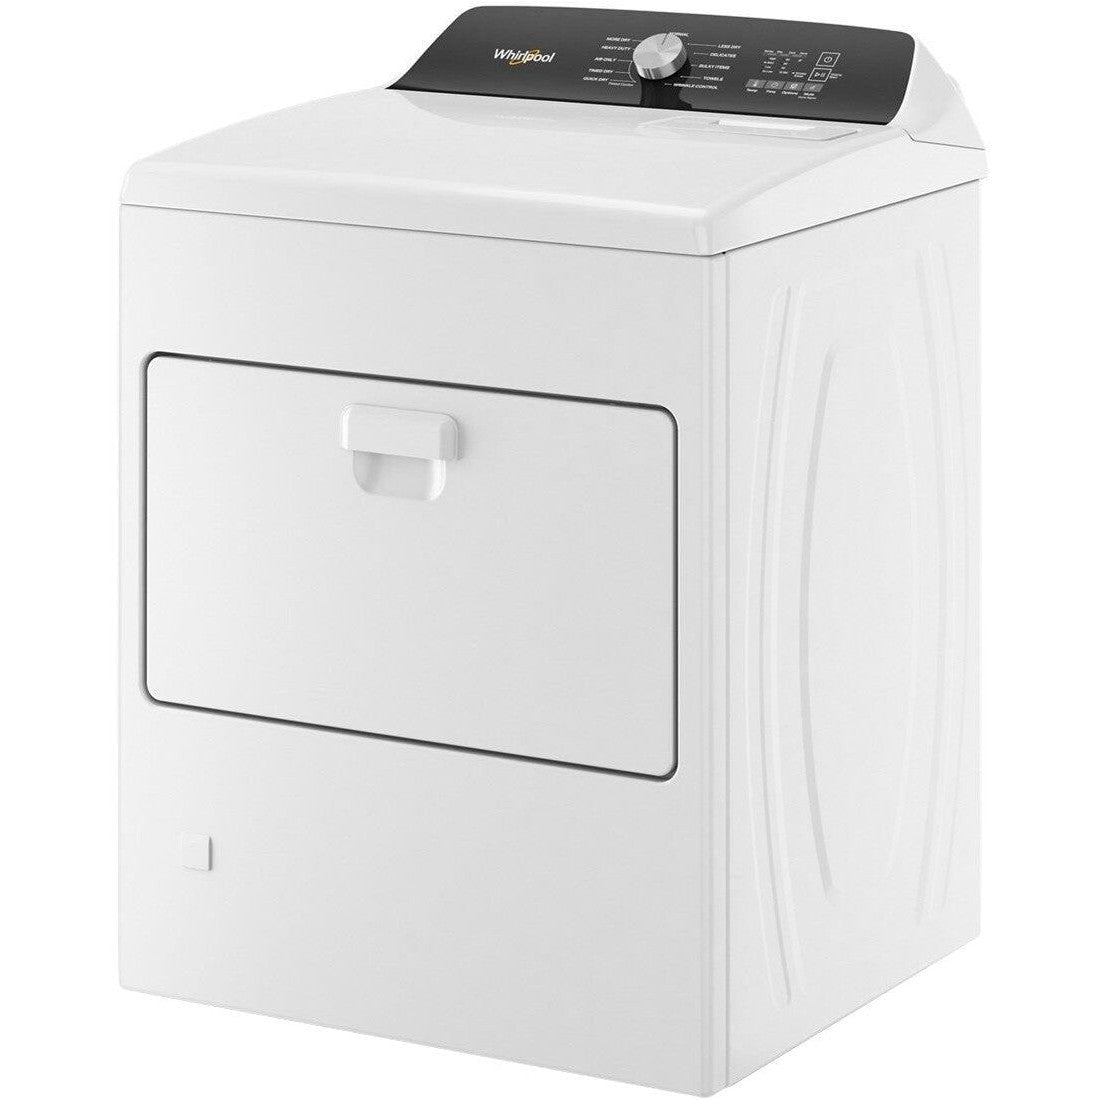 WHIRLPOOL WGD5010LW 7.0 Cu. Ft. Top Load Gas Moisture Sensing Dryer